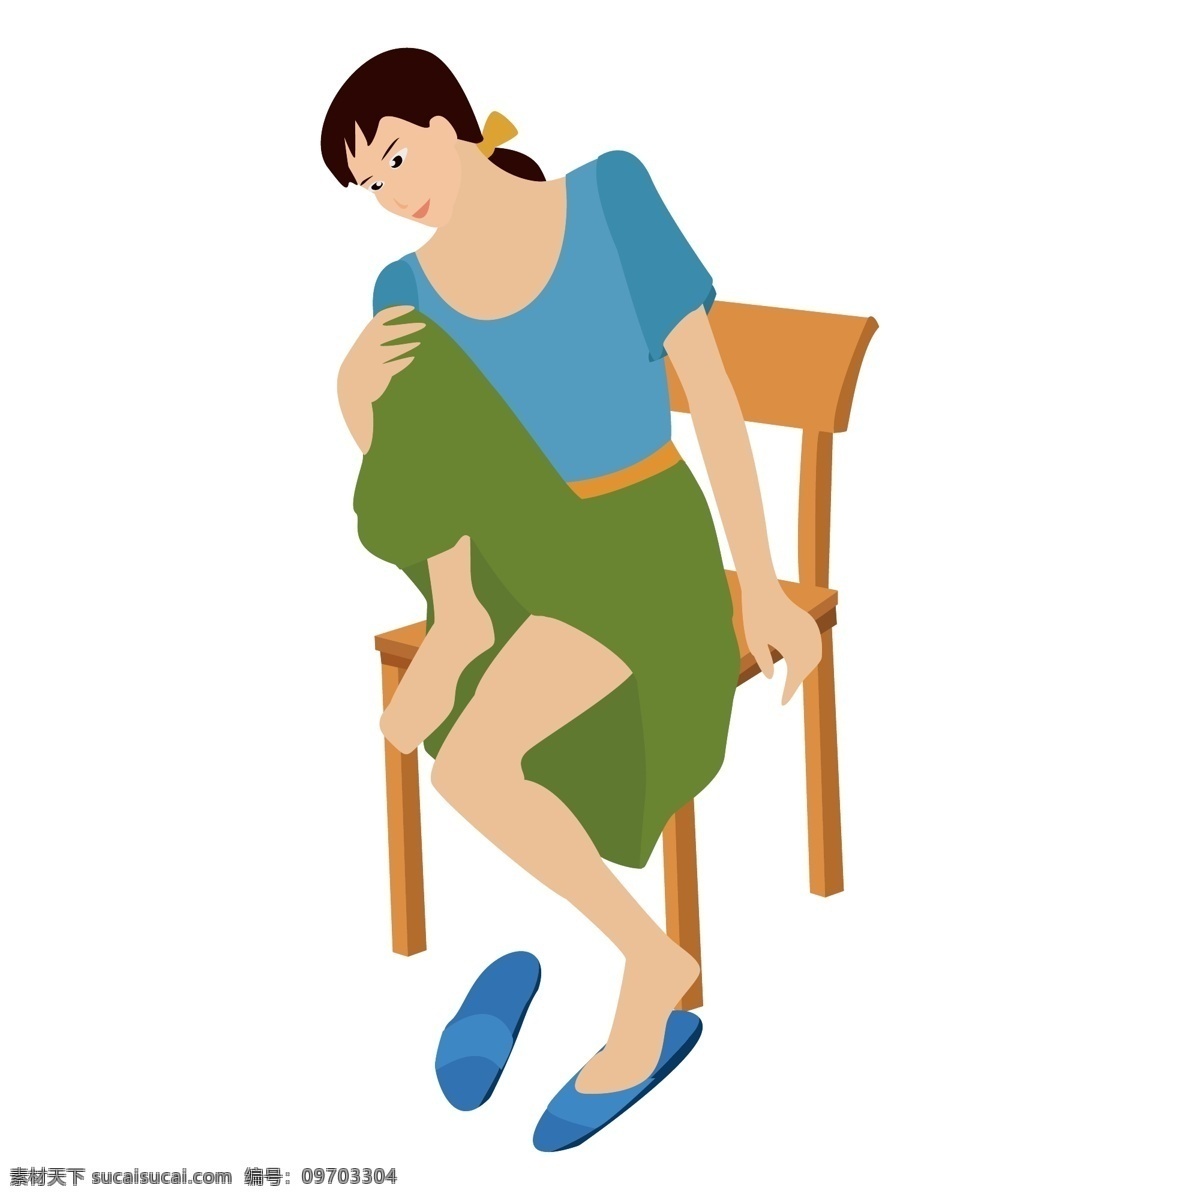 坐在 椅子 上 休息 女人 矢量图 休息的女人 拖鞋 夏季 居家 卡通 手绘 矢量